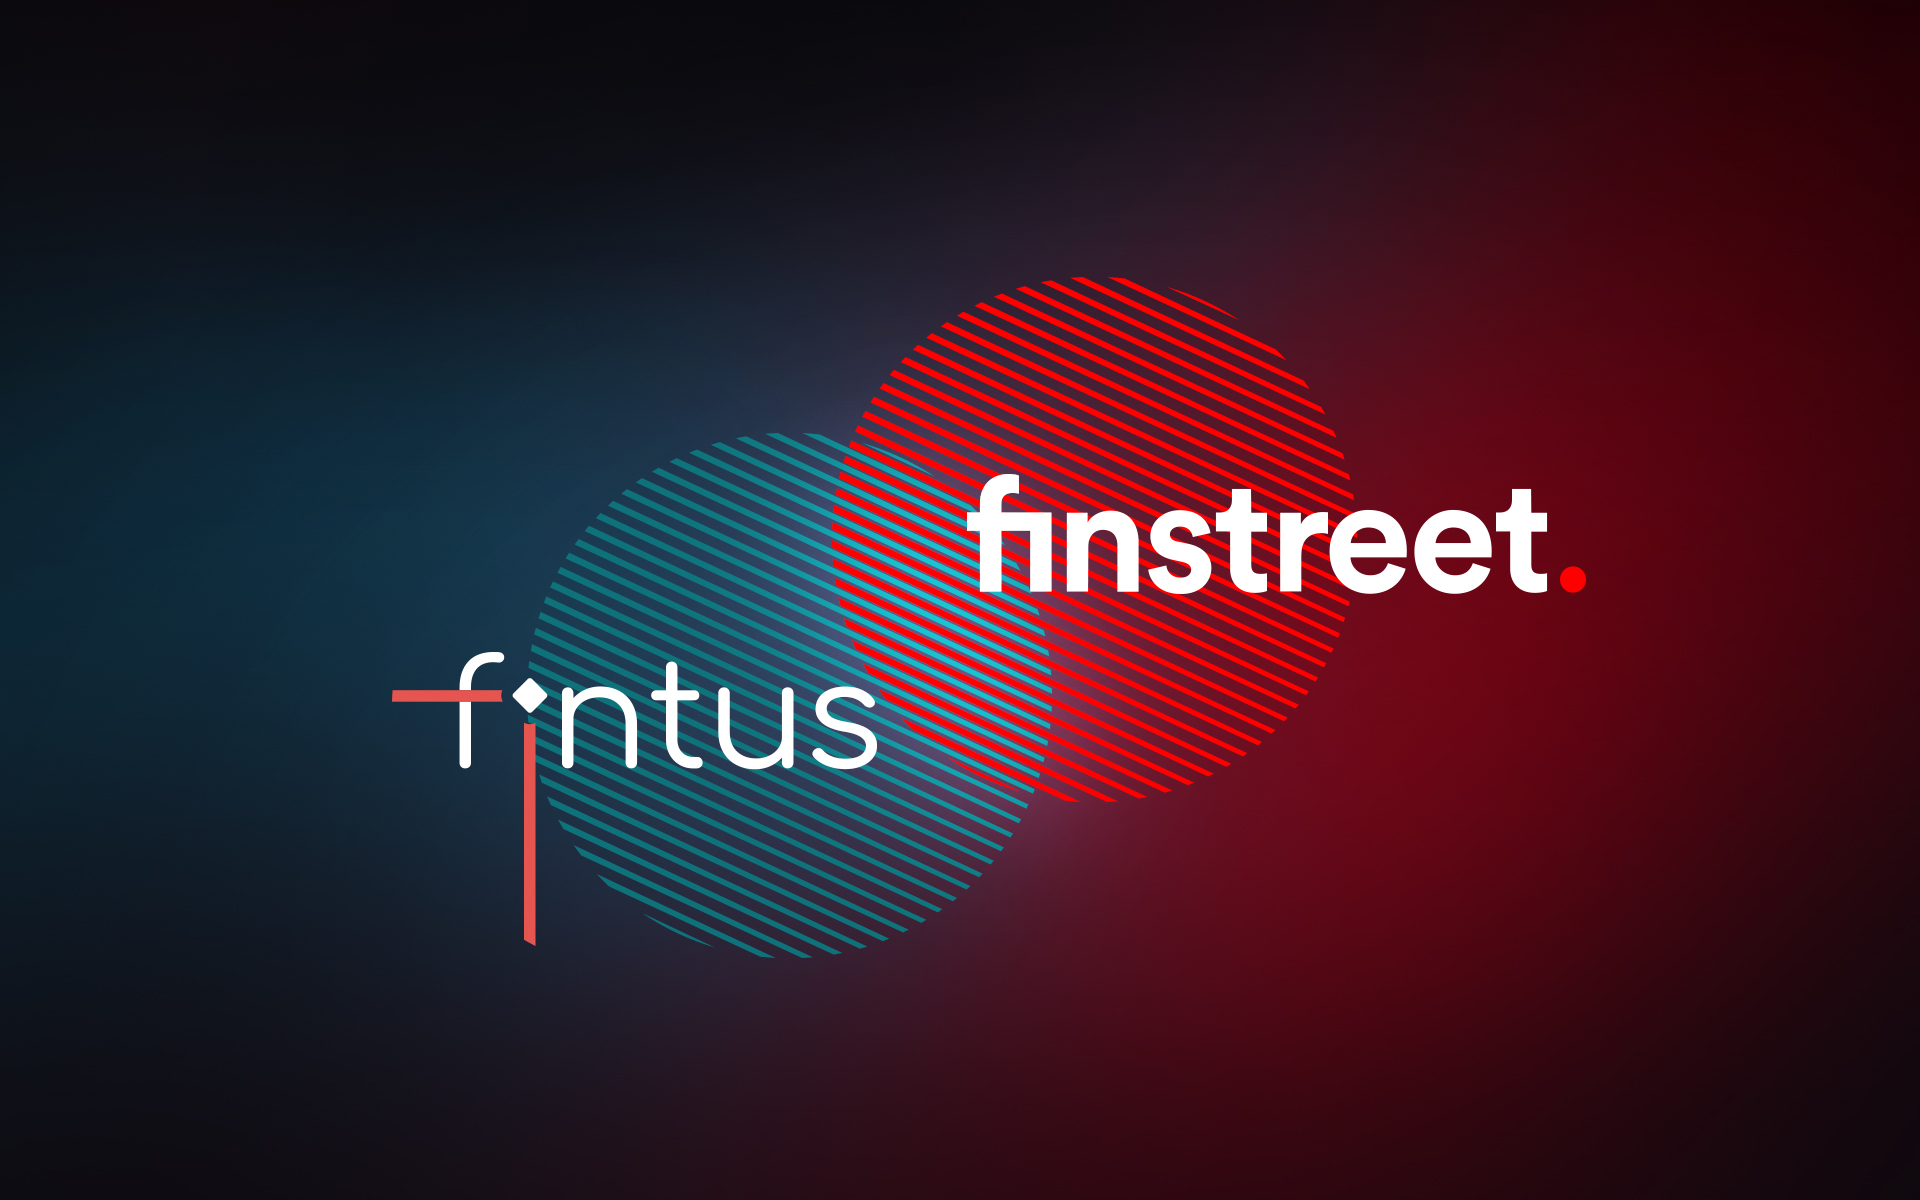 Starkes Wachstum der fintus Gruppe: fintus bündelt die eigenen Kräfte mit denen der finstreet GmbH, dem Hidden Champion im Bereich der digitalen Transformation in der Finanzindustrie